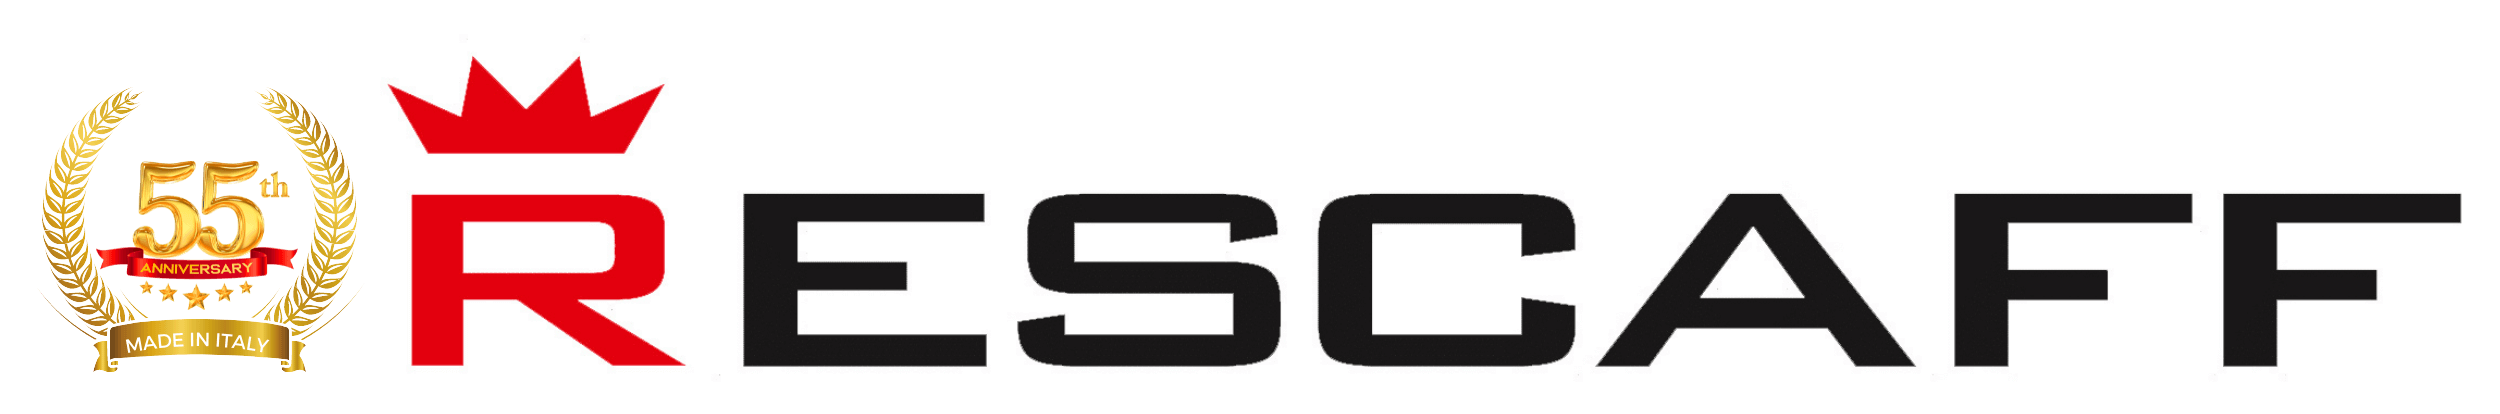 Logo Rescaff 55 anni